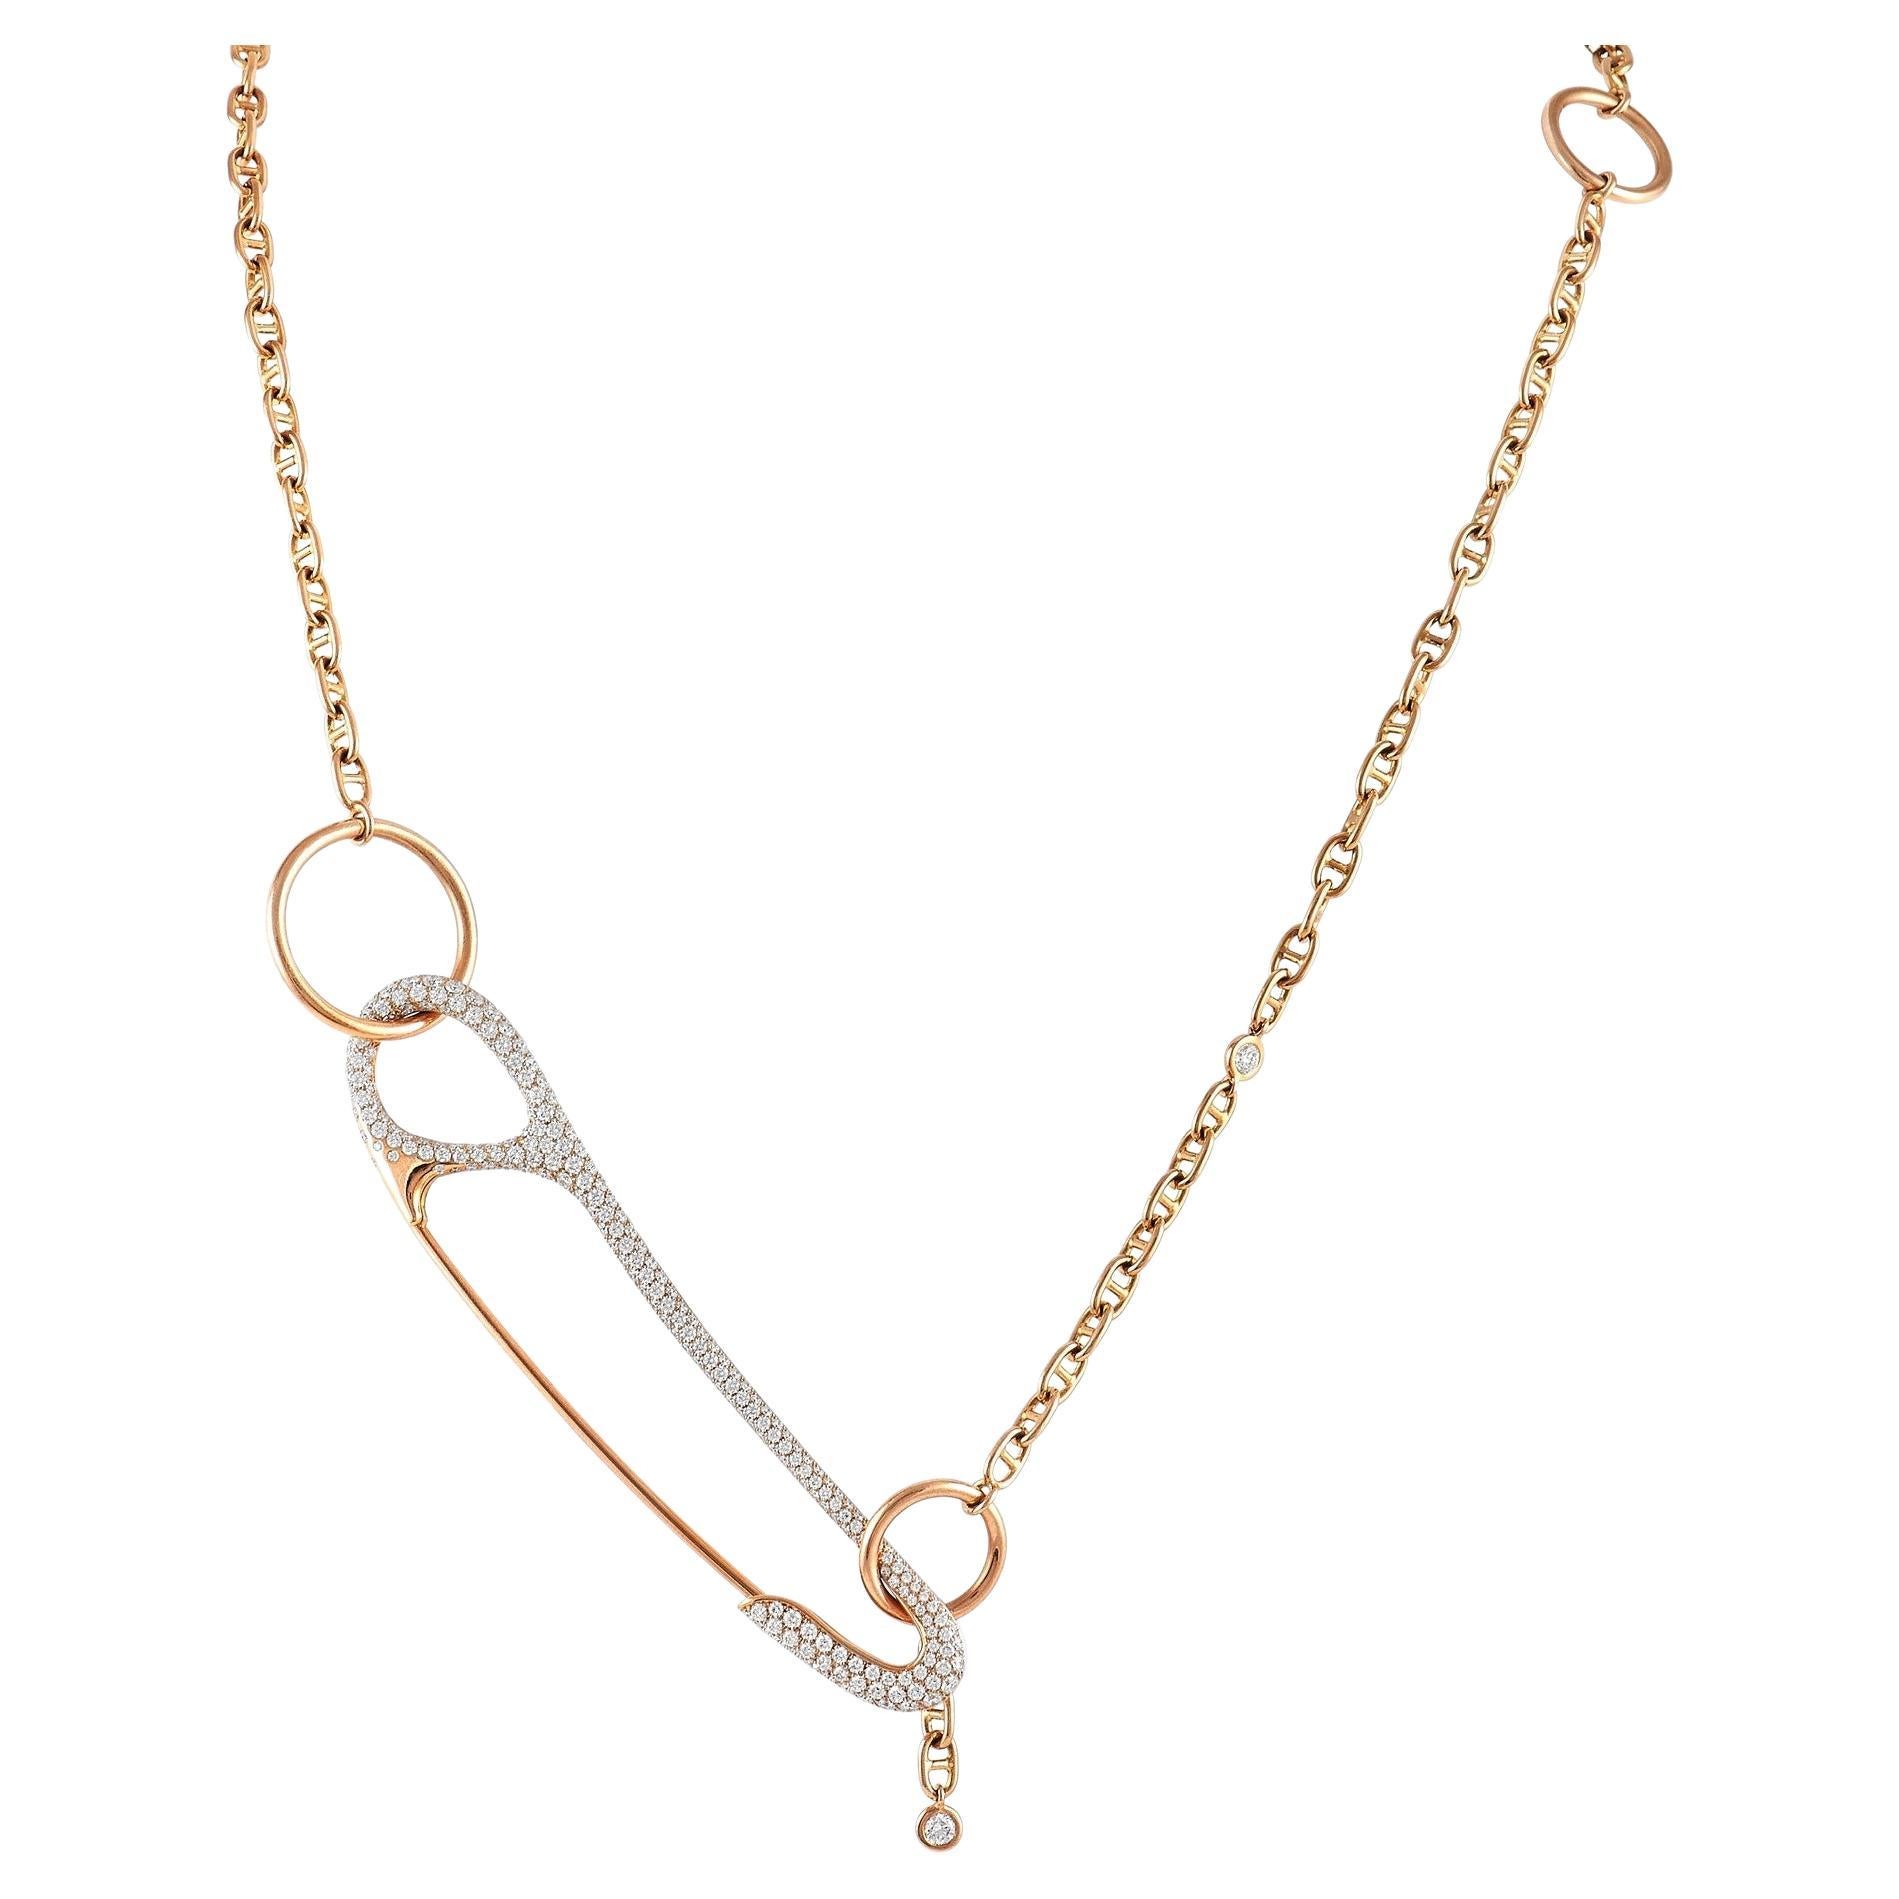 Hermès Chaine d'Ancre Punk 18K Rose Gold 3.40 ct Diamond Necklace